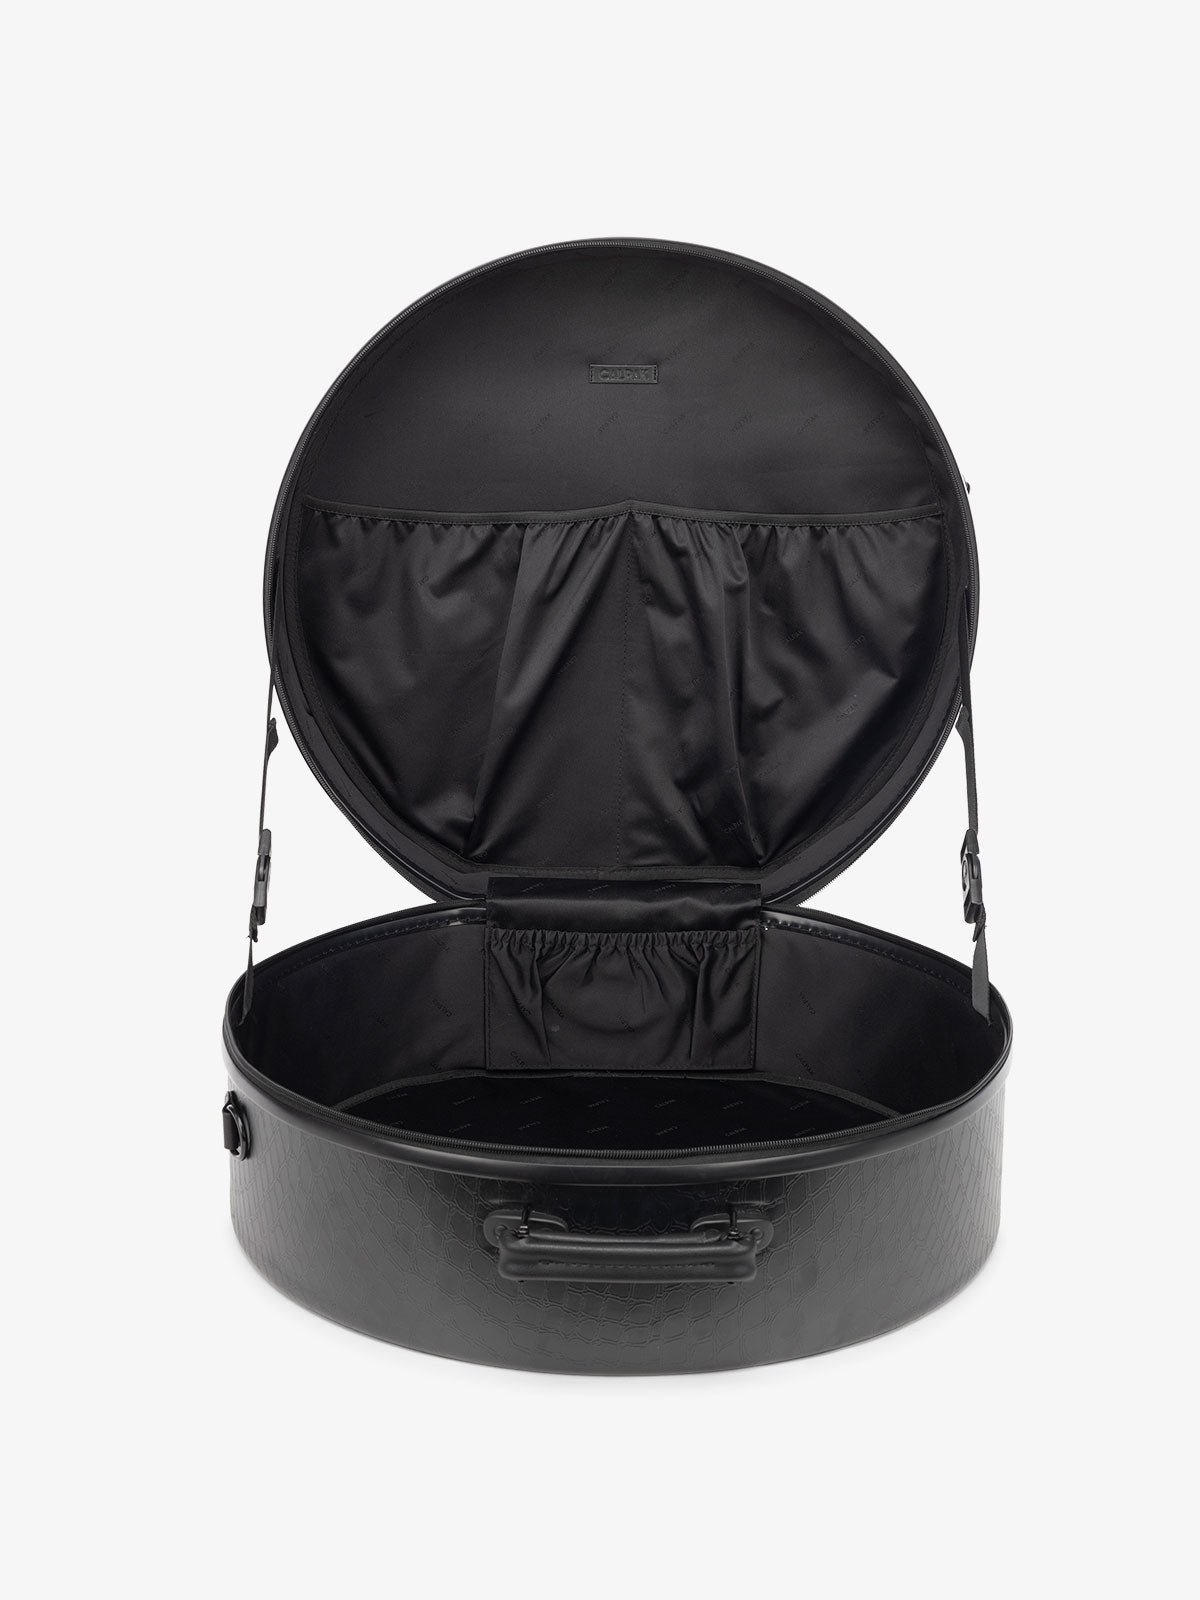 CALPAK TRNK Large Hat Box in TRNK Black